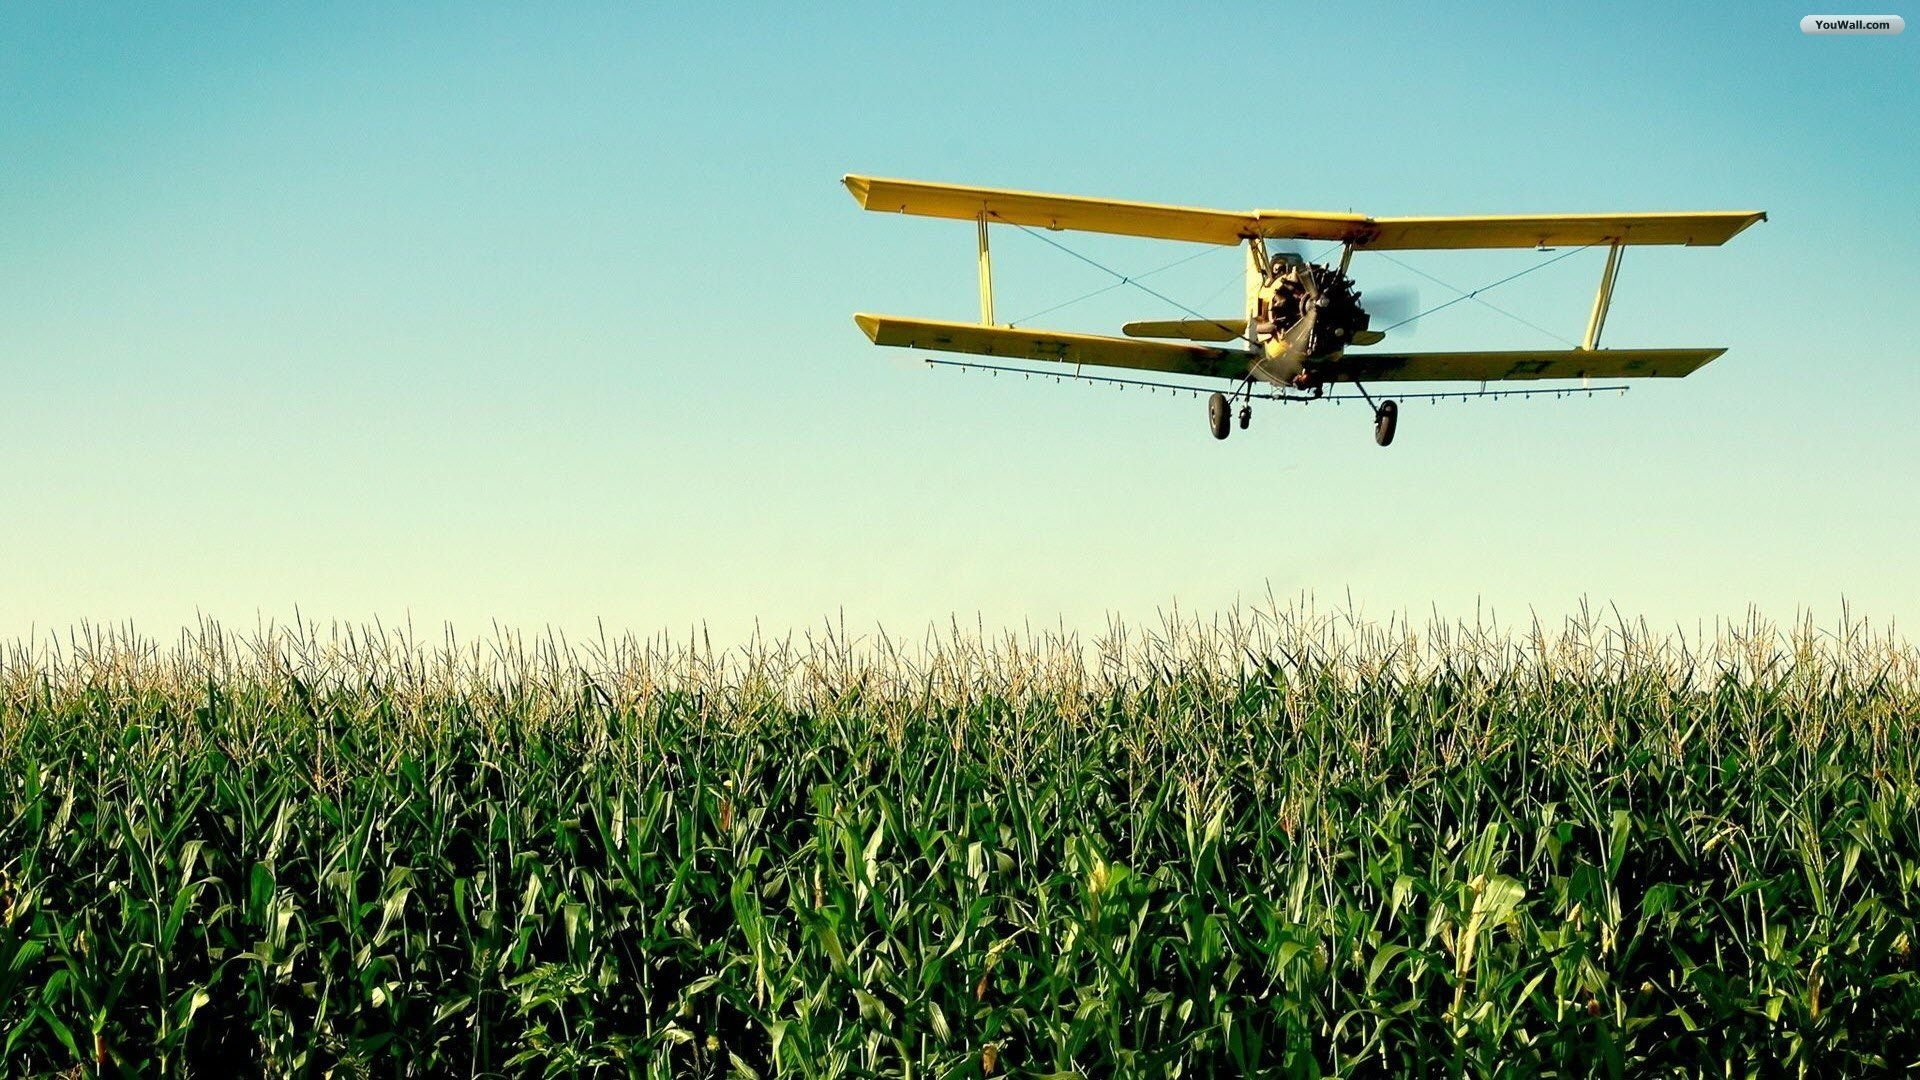 تصویر هواپیما قدیمی زرد رنگ بر فراز مزرعه سبز تماشایی